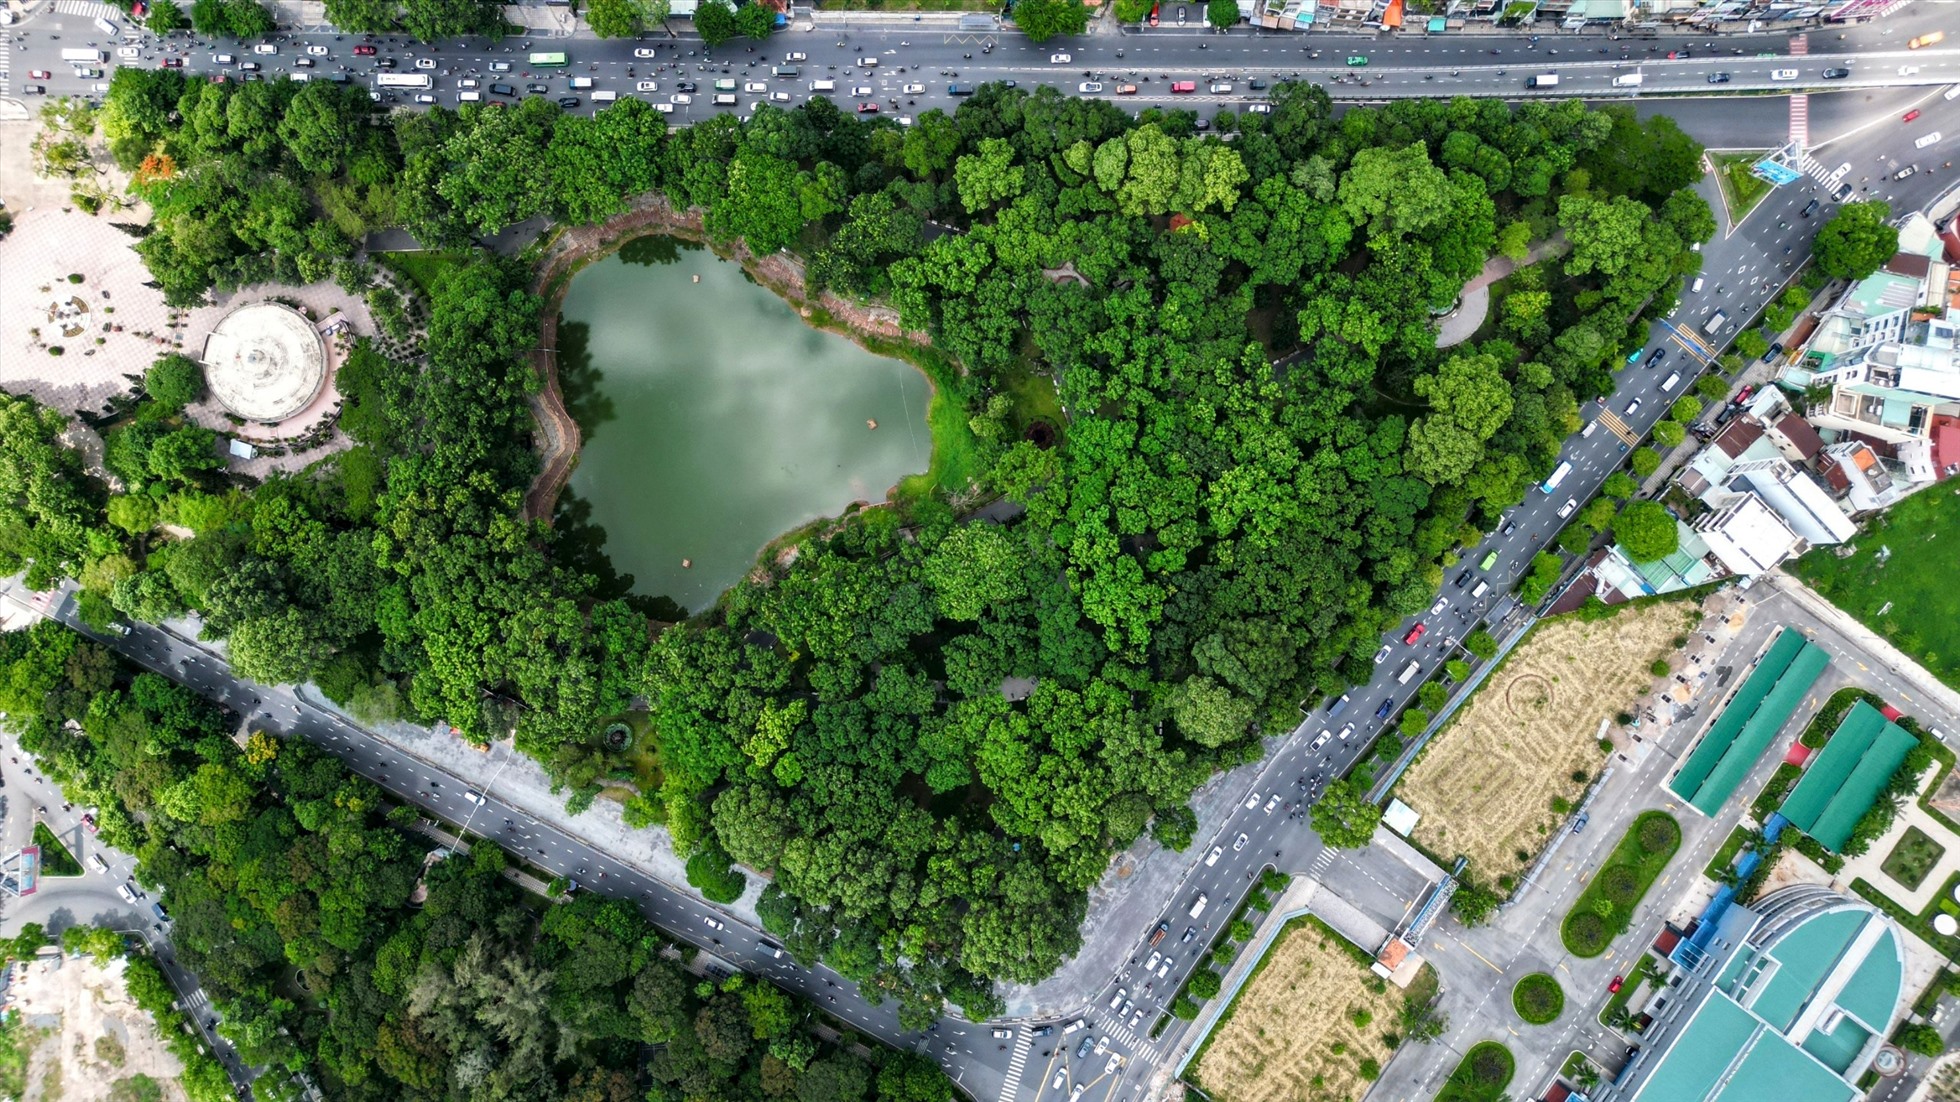 Công viên Hoàng Văn Thụ, quận Tân Bình, bị cắt khoảng 1.600 m2 phục vụ thi công đường nối Trần Quốc Hoàn - Cộng Hoà, giảm ùn tắc cửa ngõ Tân Sơn Nhất.